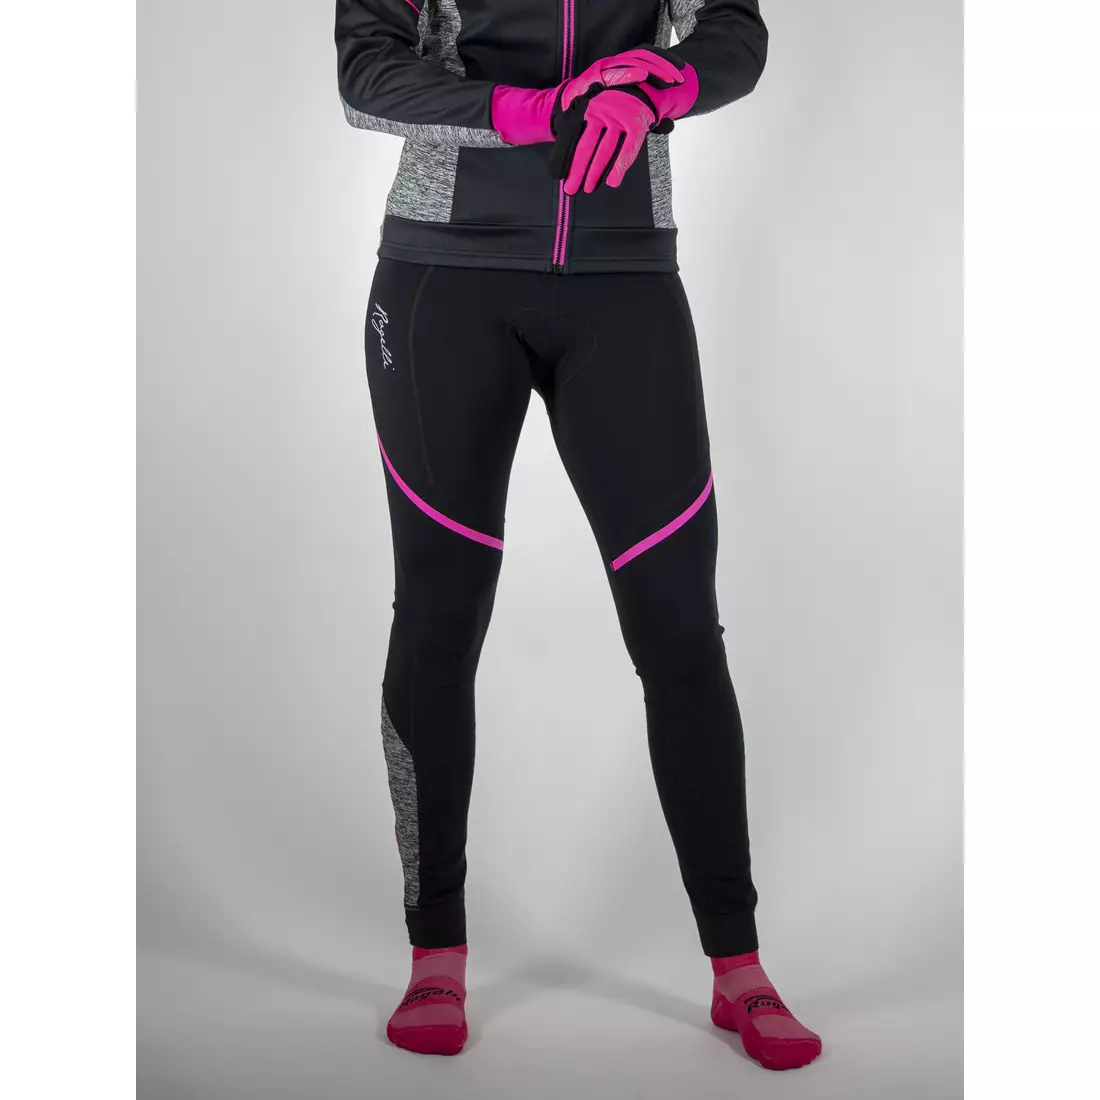 ROGELLI CAROU 2.0 dámské zateplené cyklistické kalhoty, šle, černo-růžovo-šedé